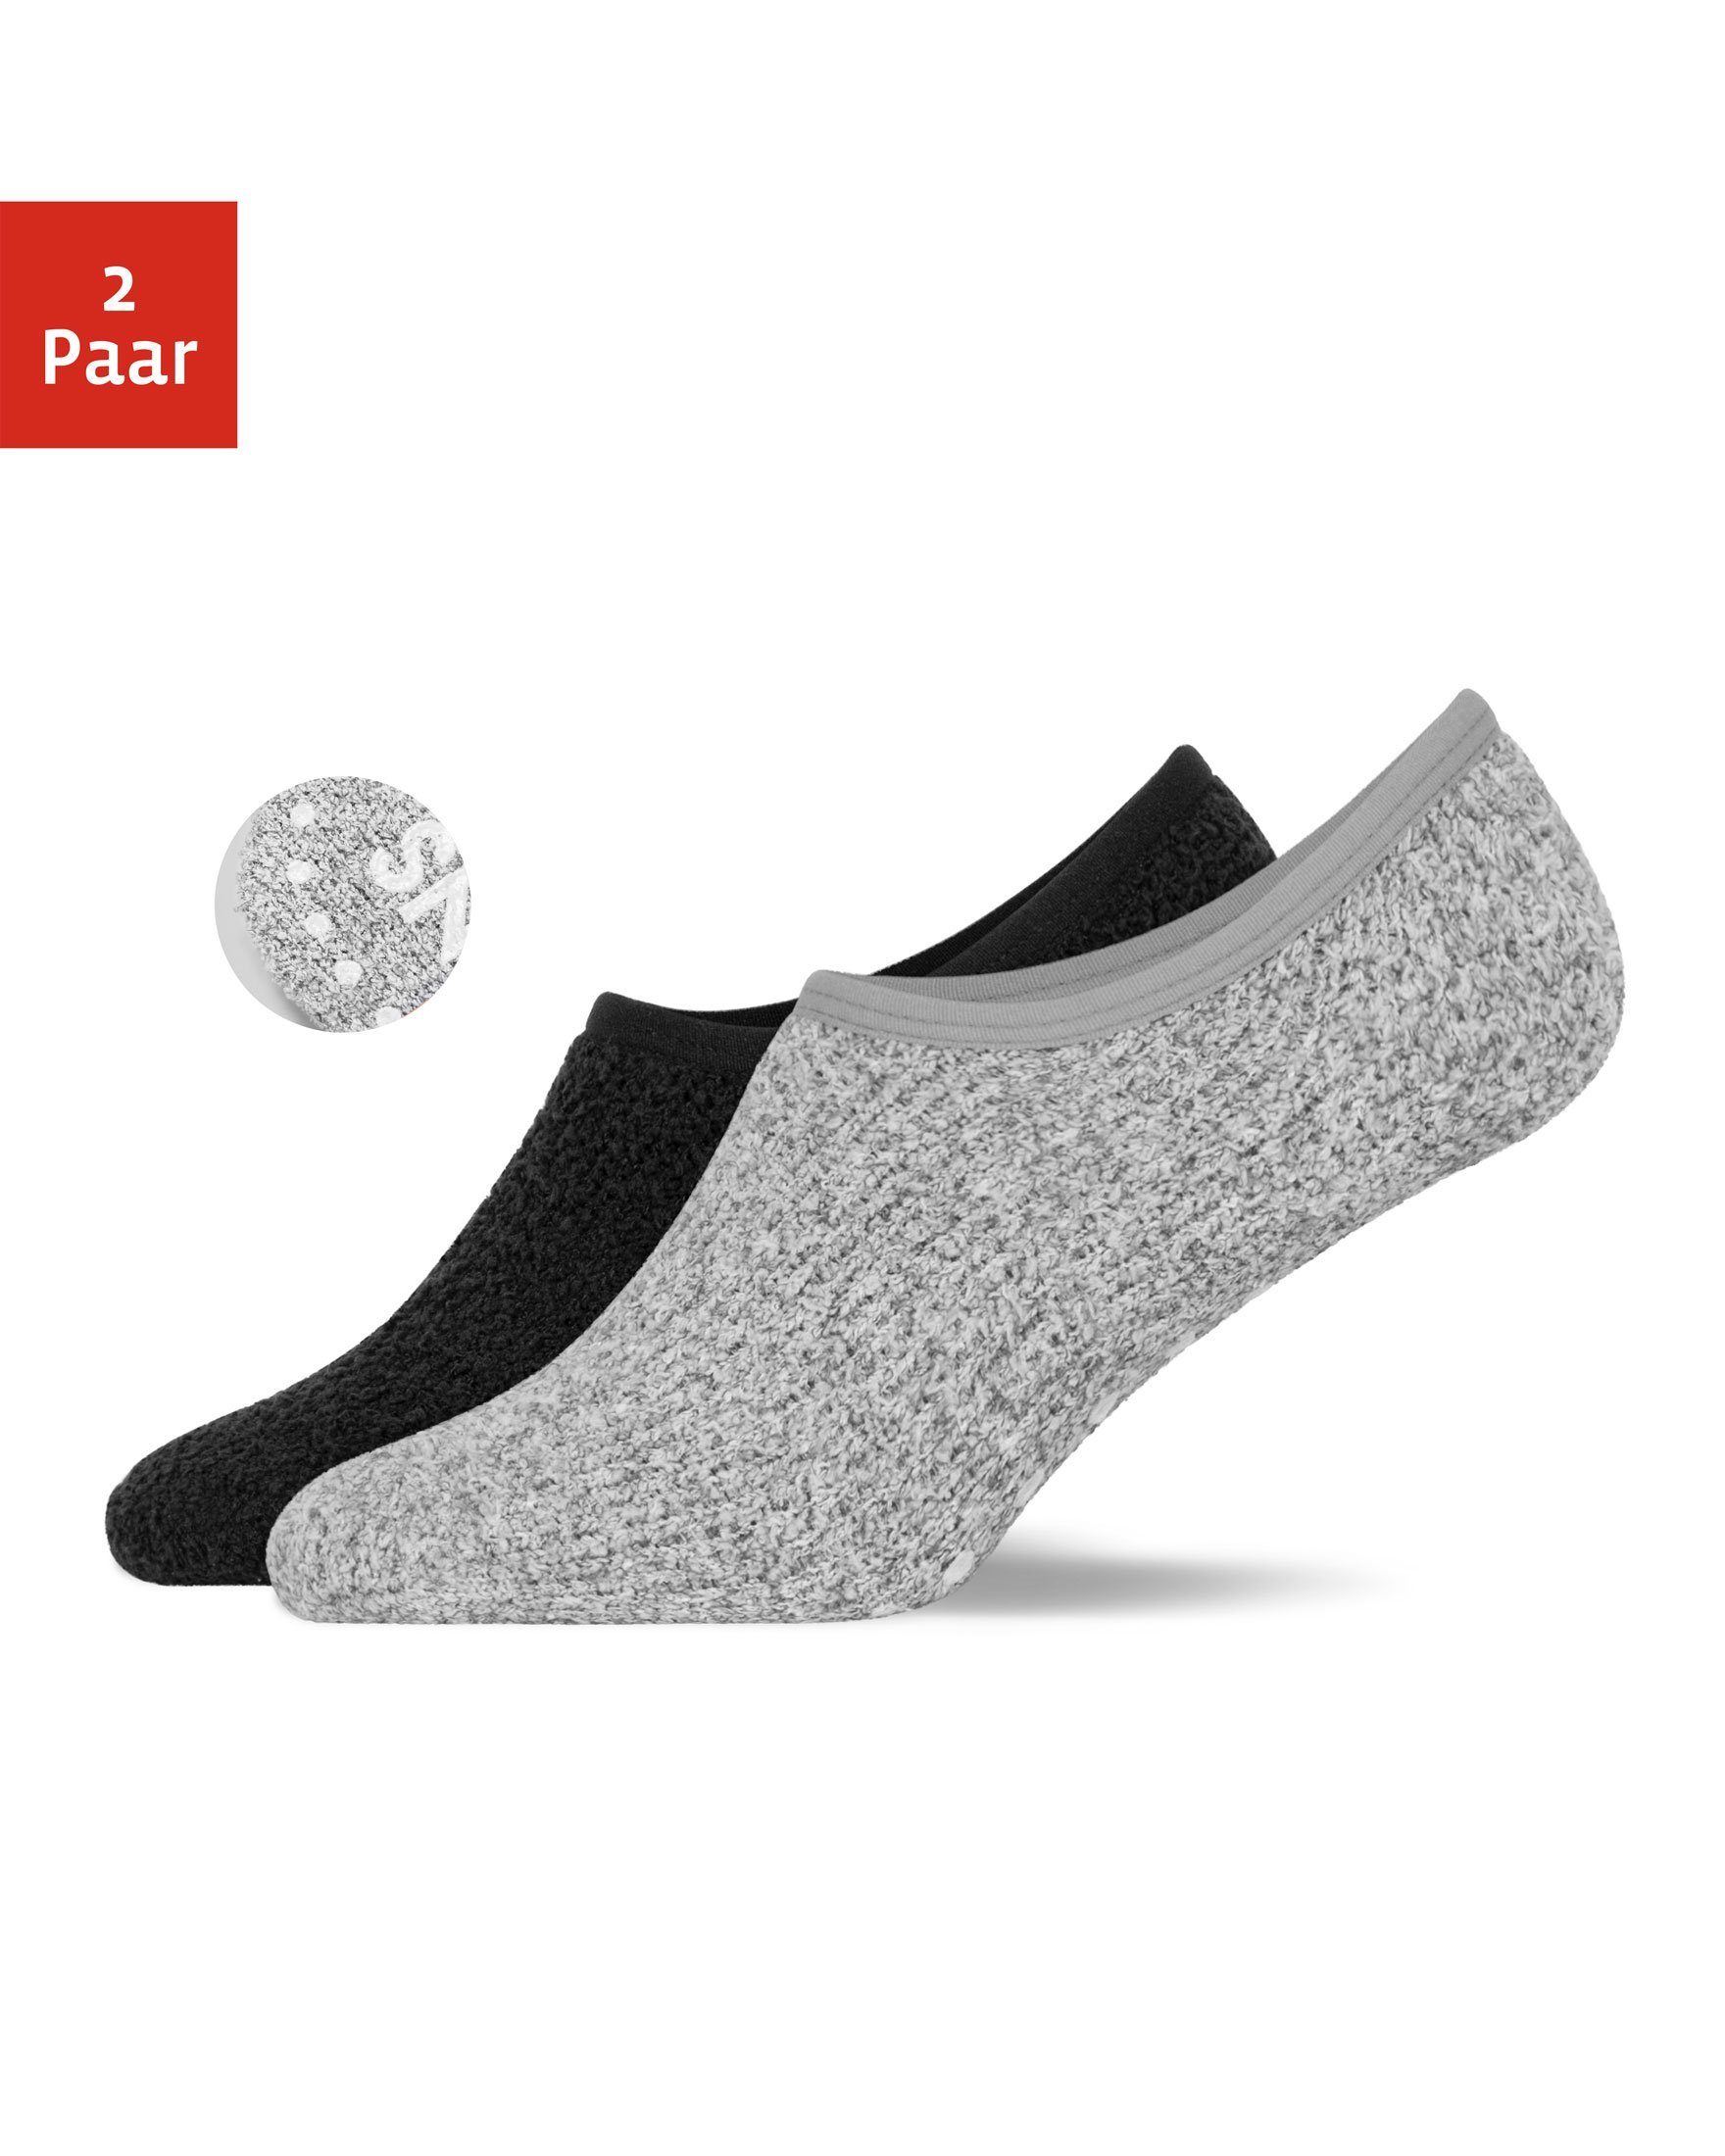 SNOCKS Füßlinge Fluffy Invisible Socks Sneaker Socken Damen Herren (2-Paar)  Anti-Rutsch-Socken, perfekt für Sneaker im Winter